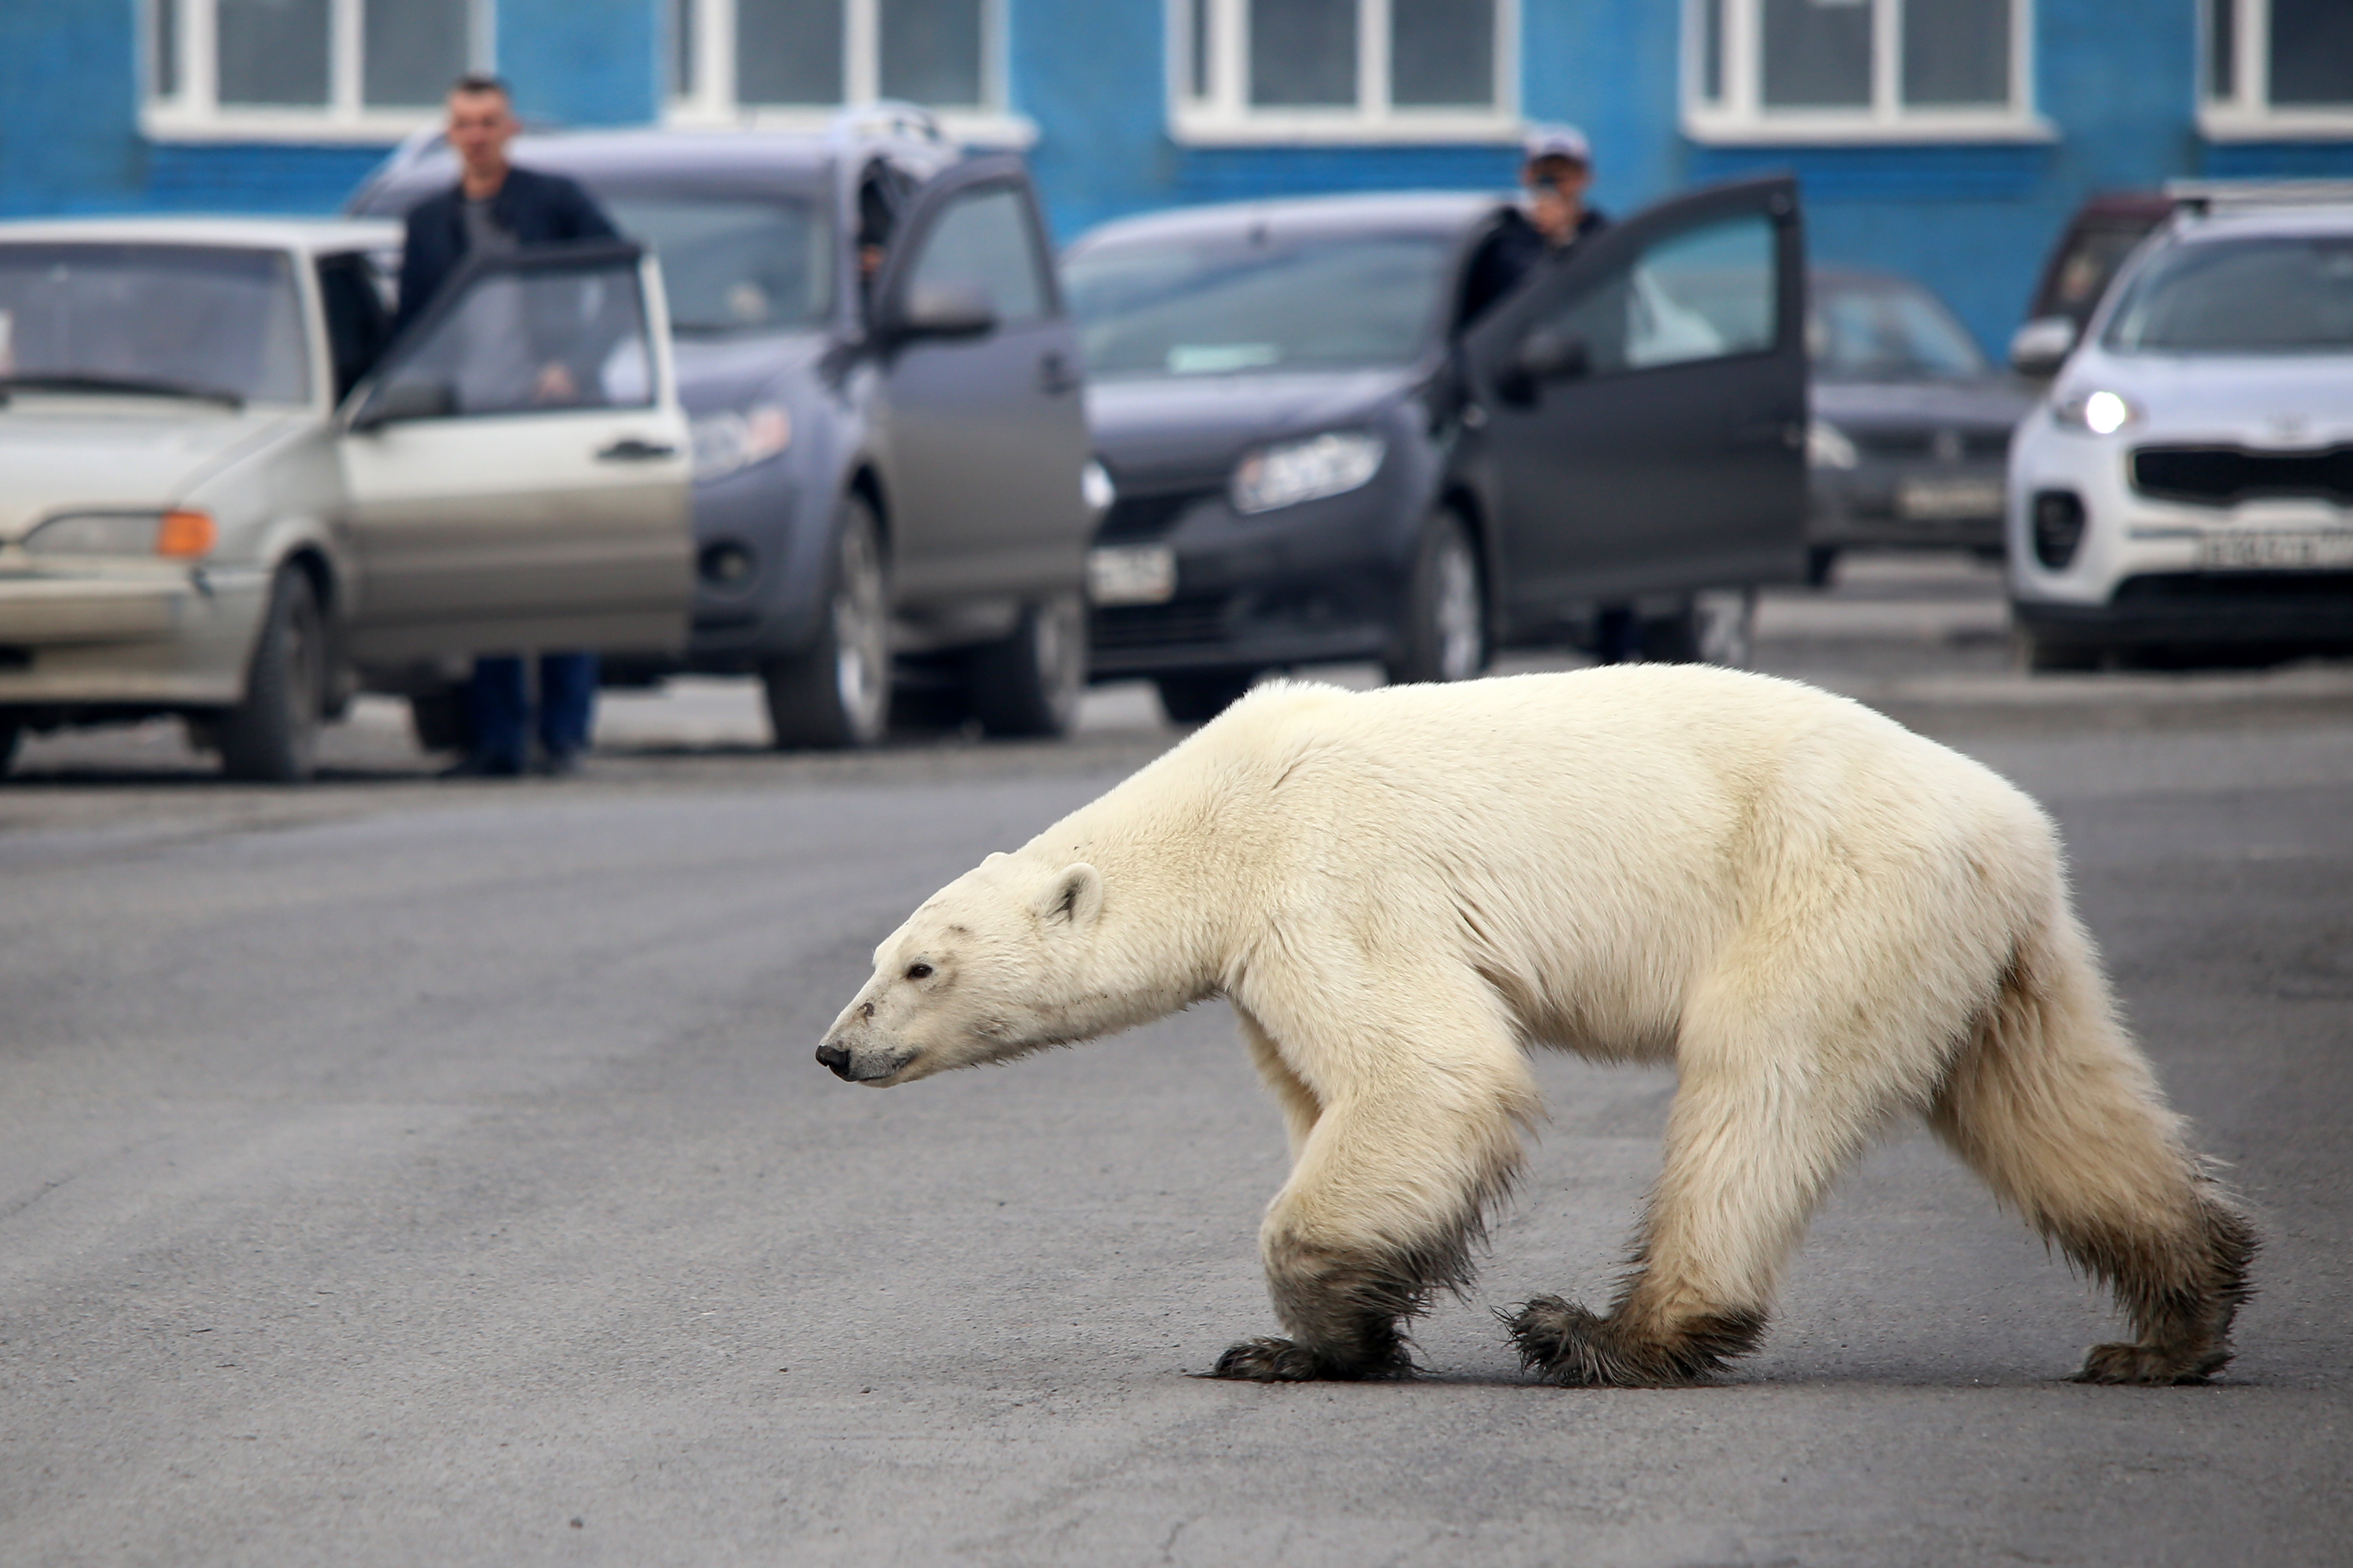 A 22. században már nem lesznek jegesmedvék – számolta ki egy magyar vezetésű kutatócsoport